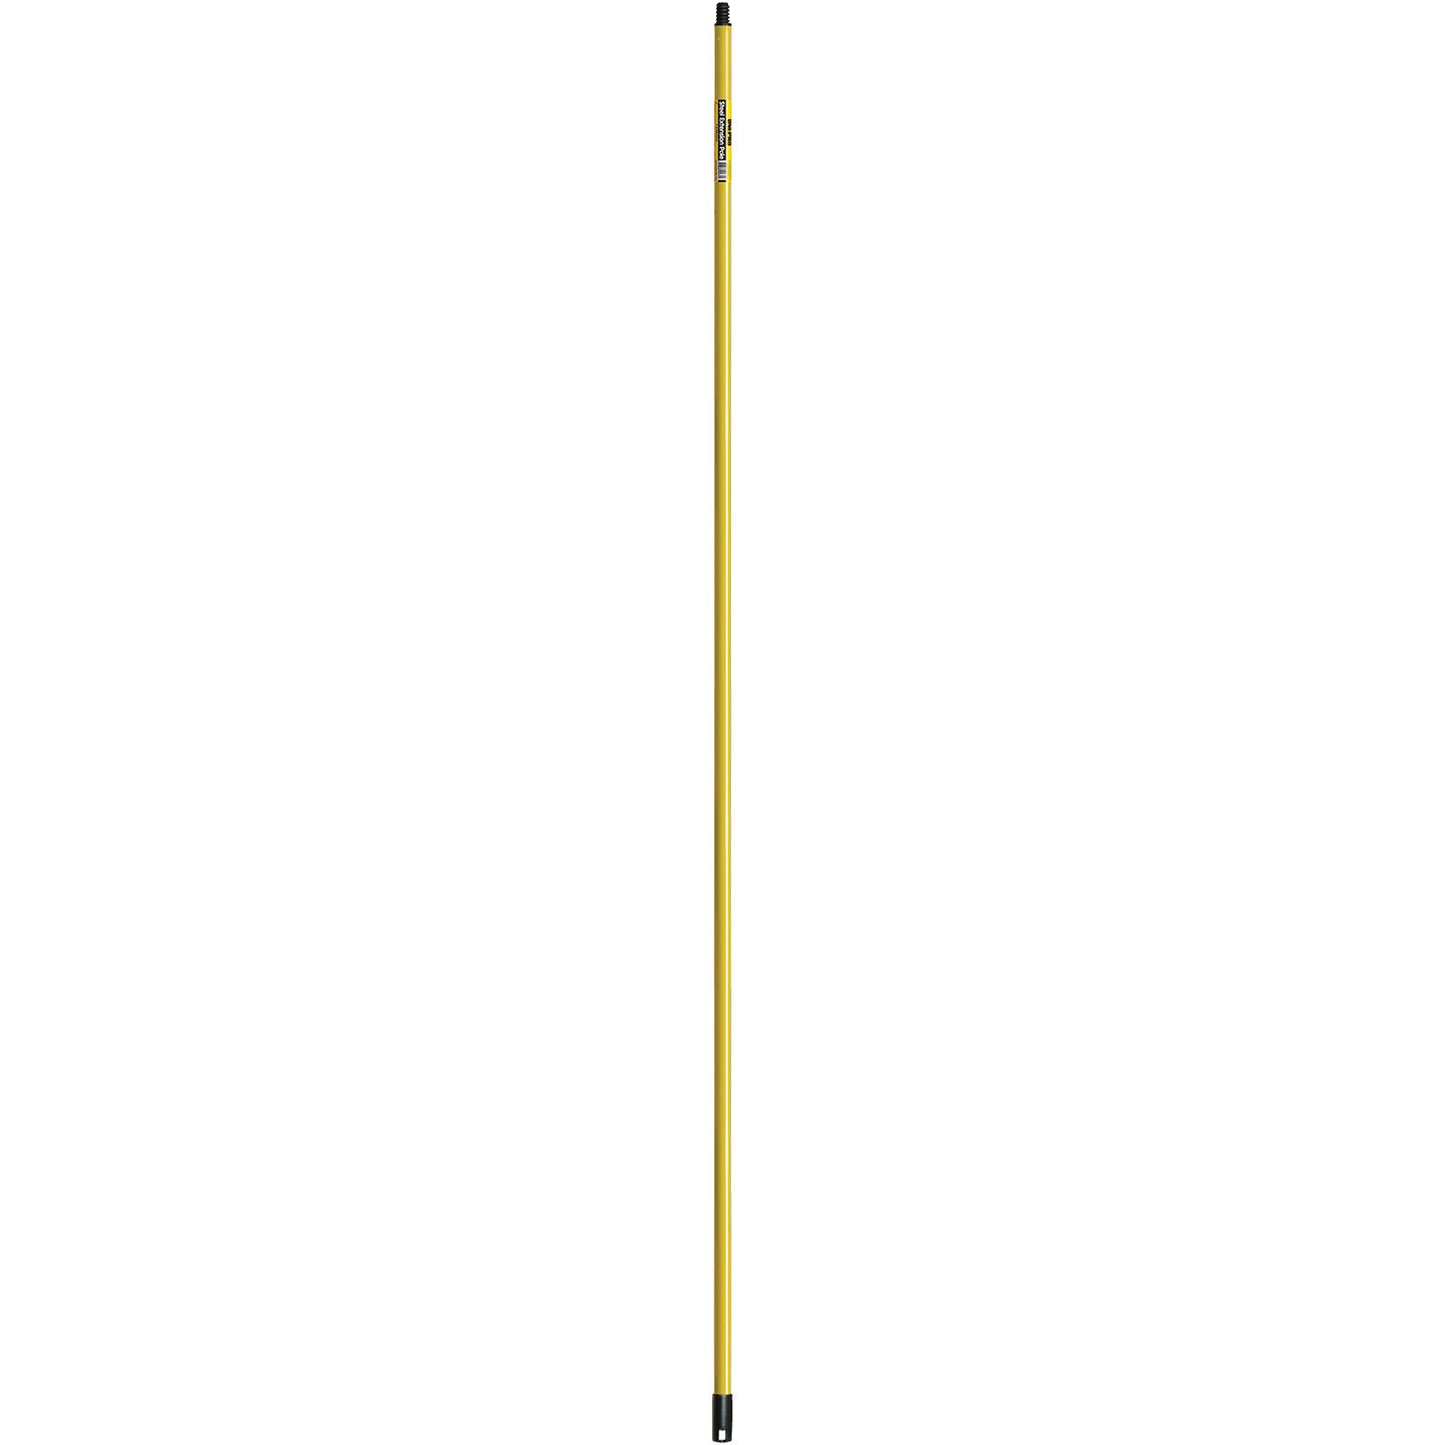 UPO Pole Fixed Yellow Threaded 1.8m